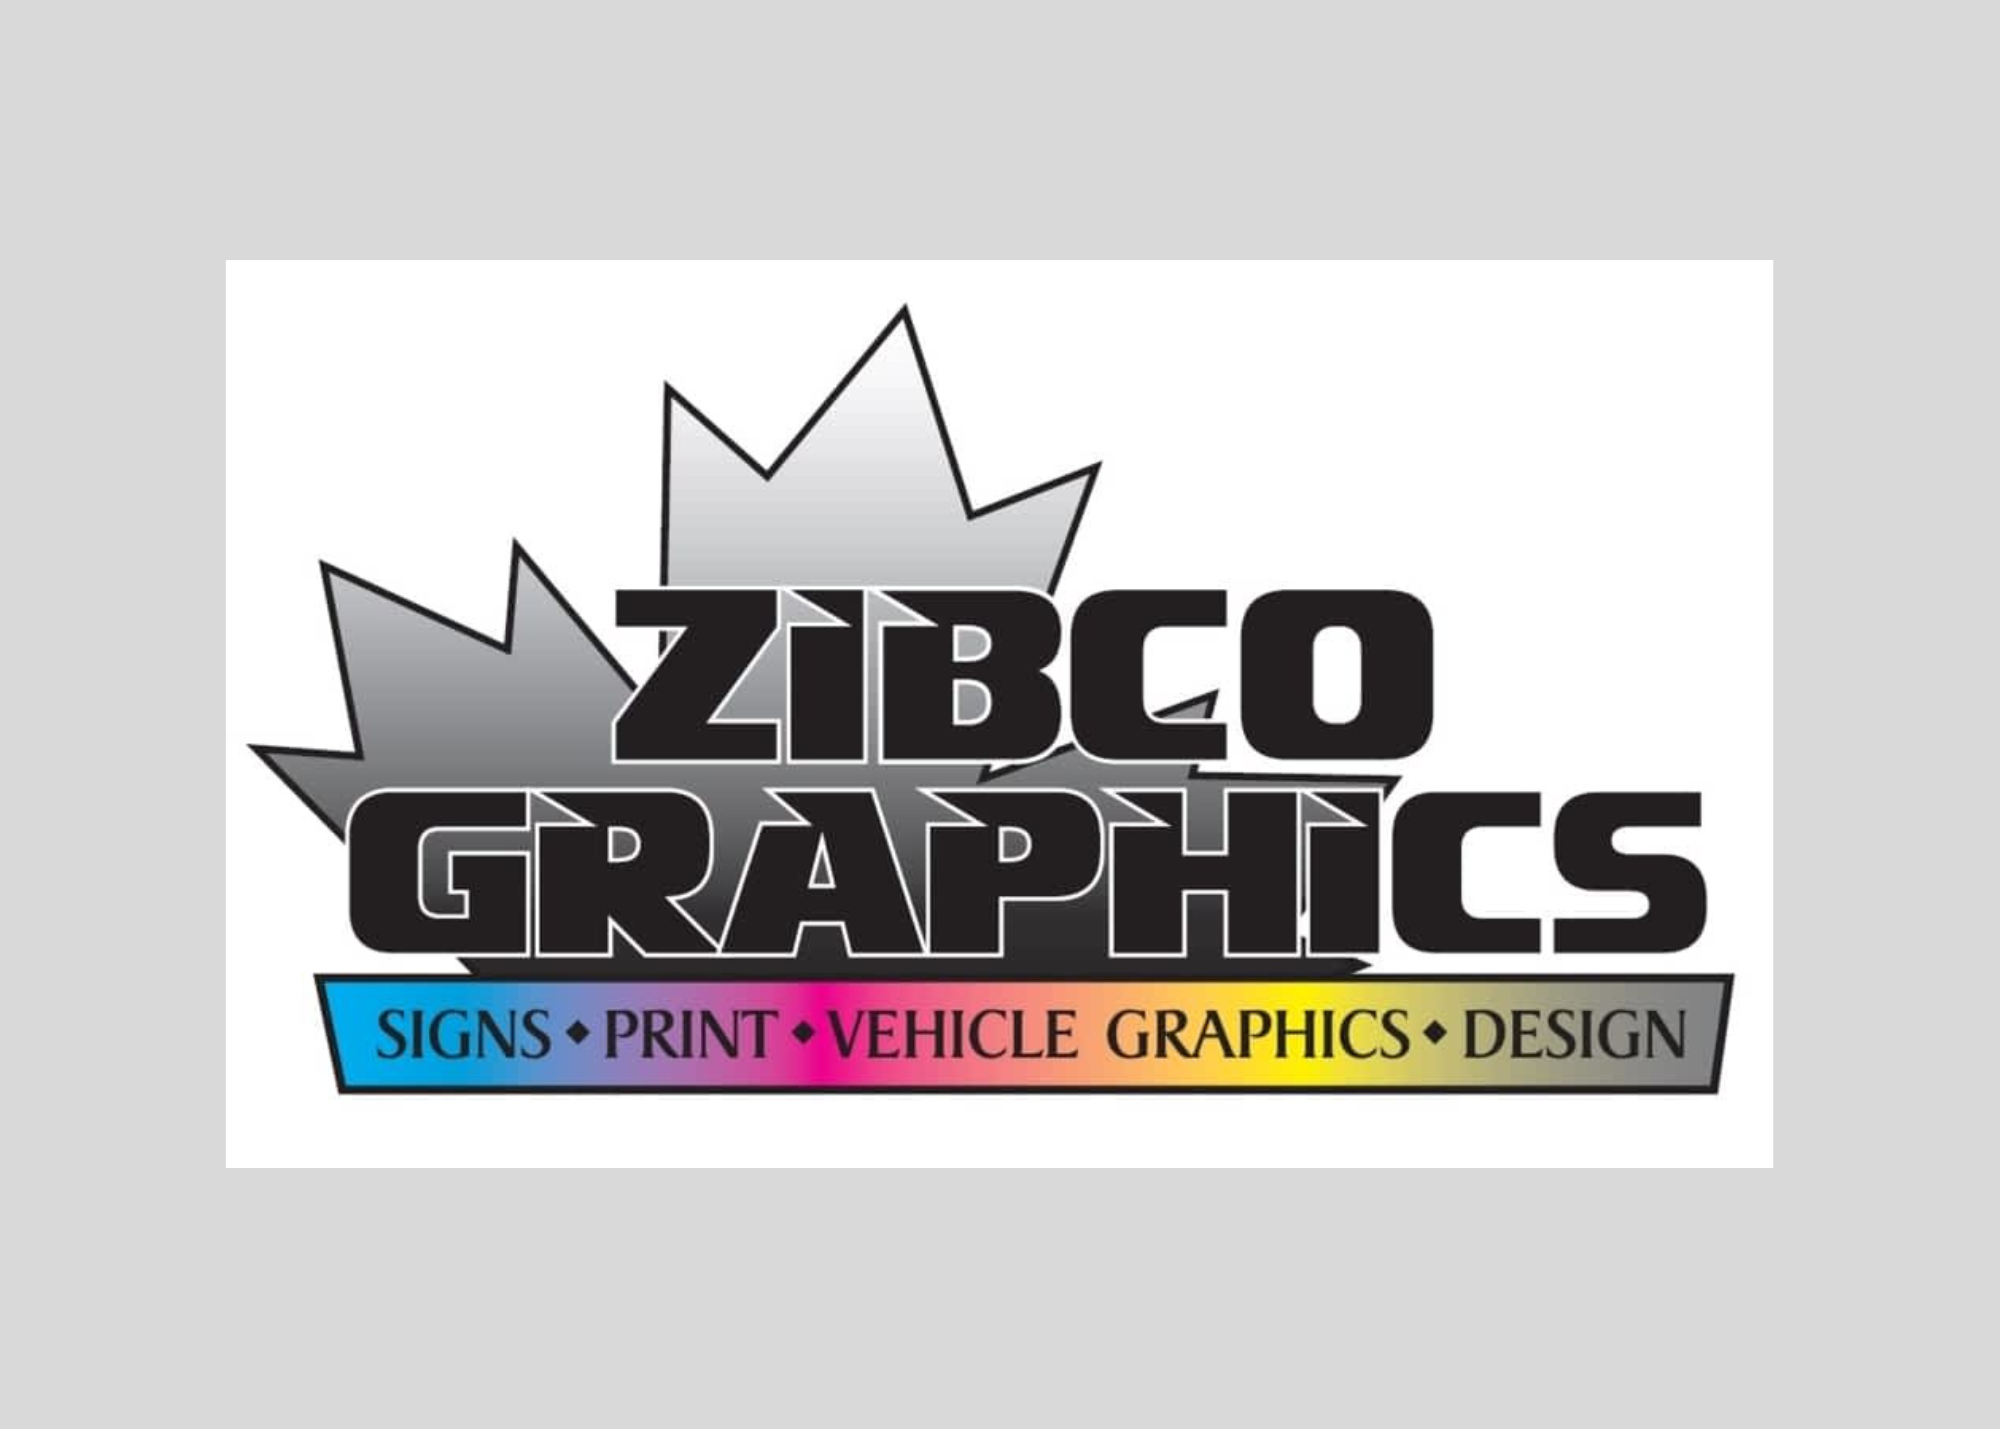 zibco graphics logo